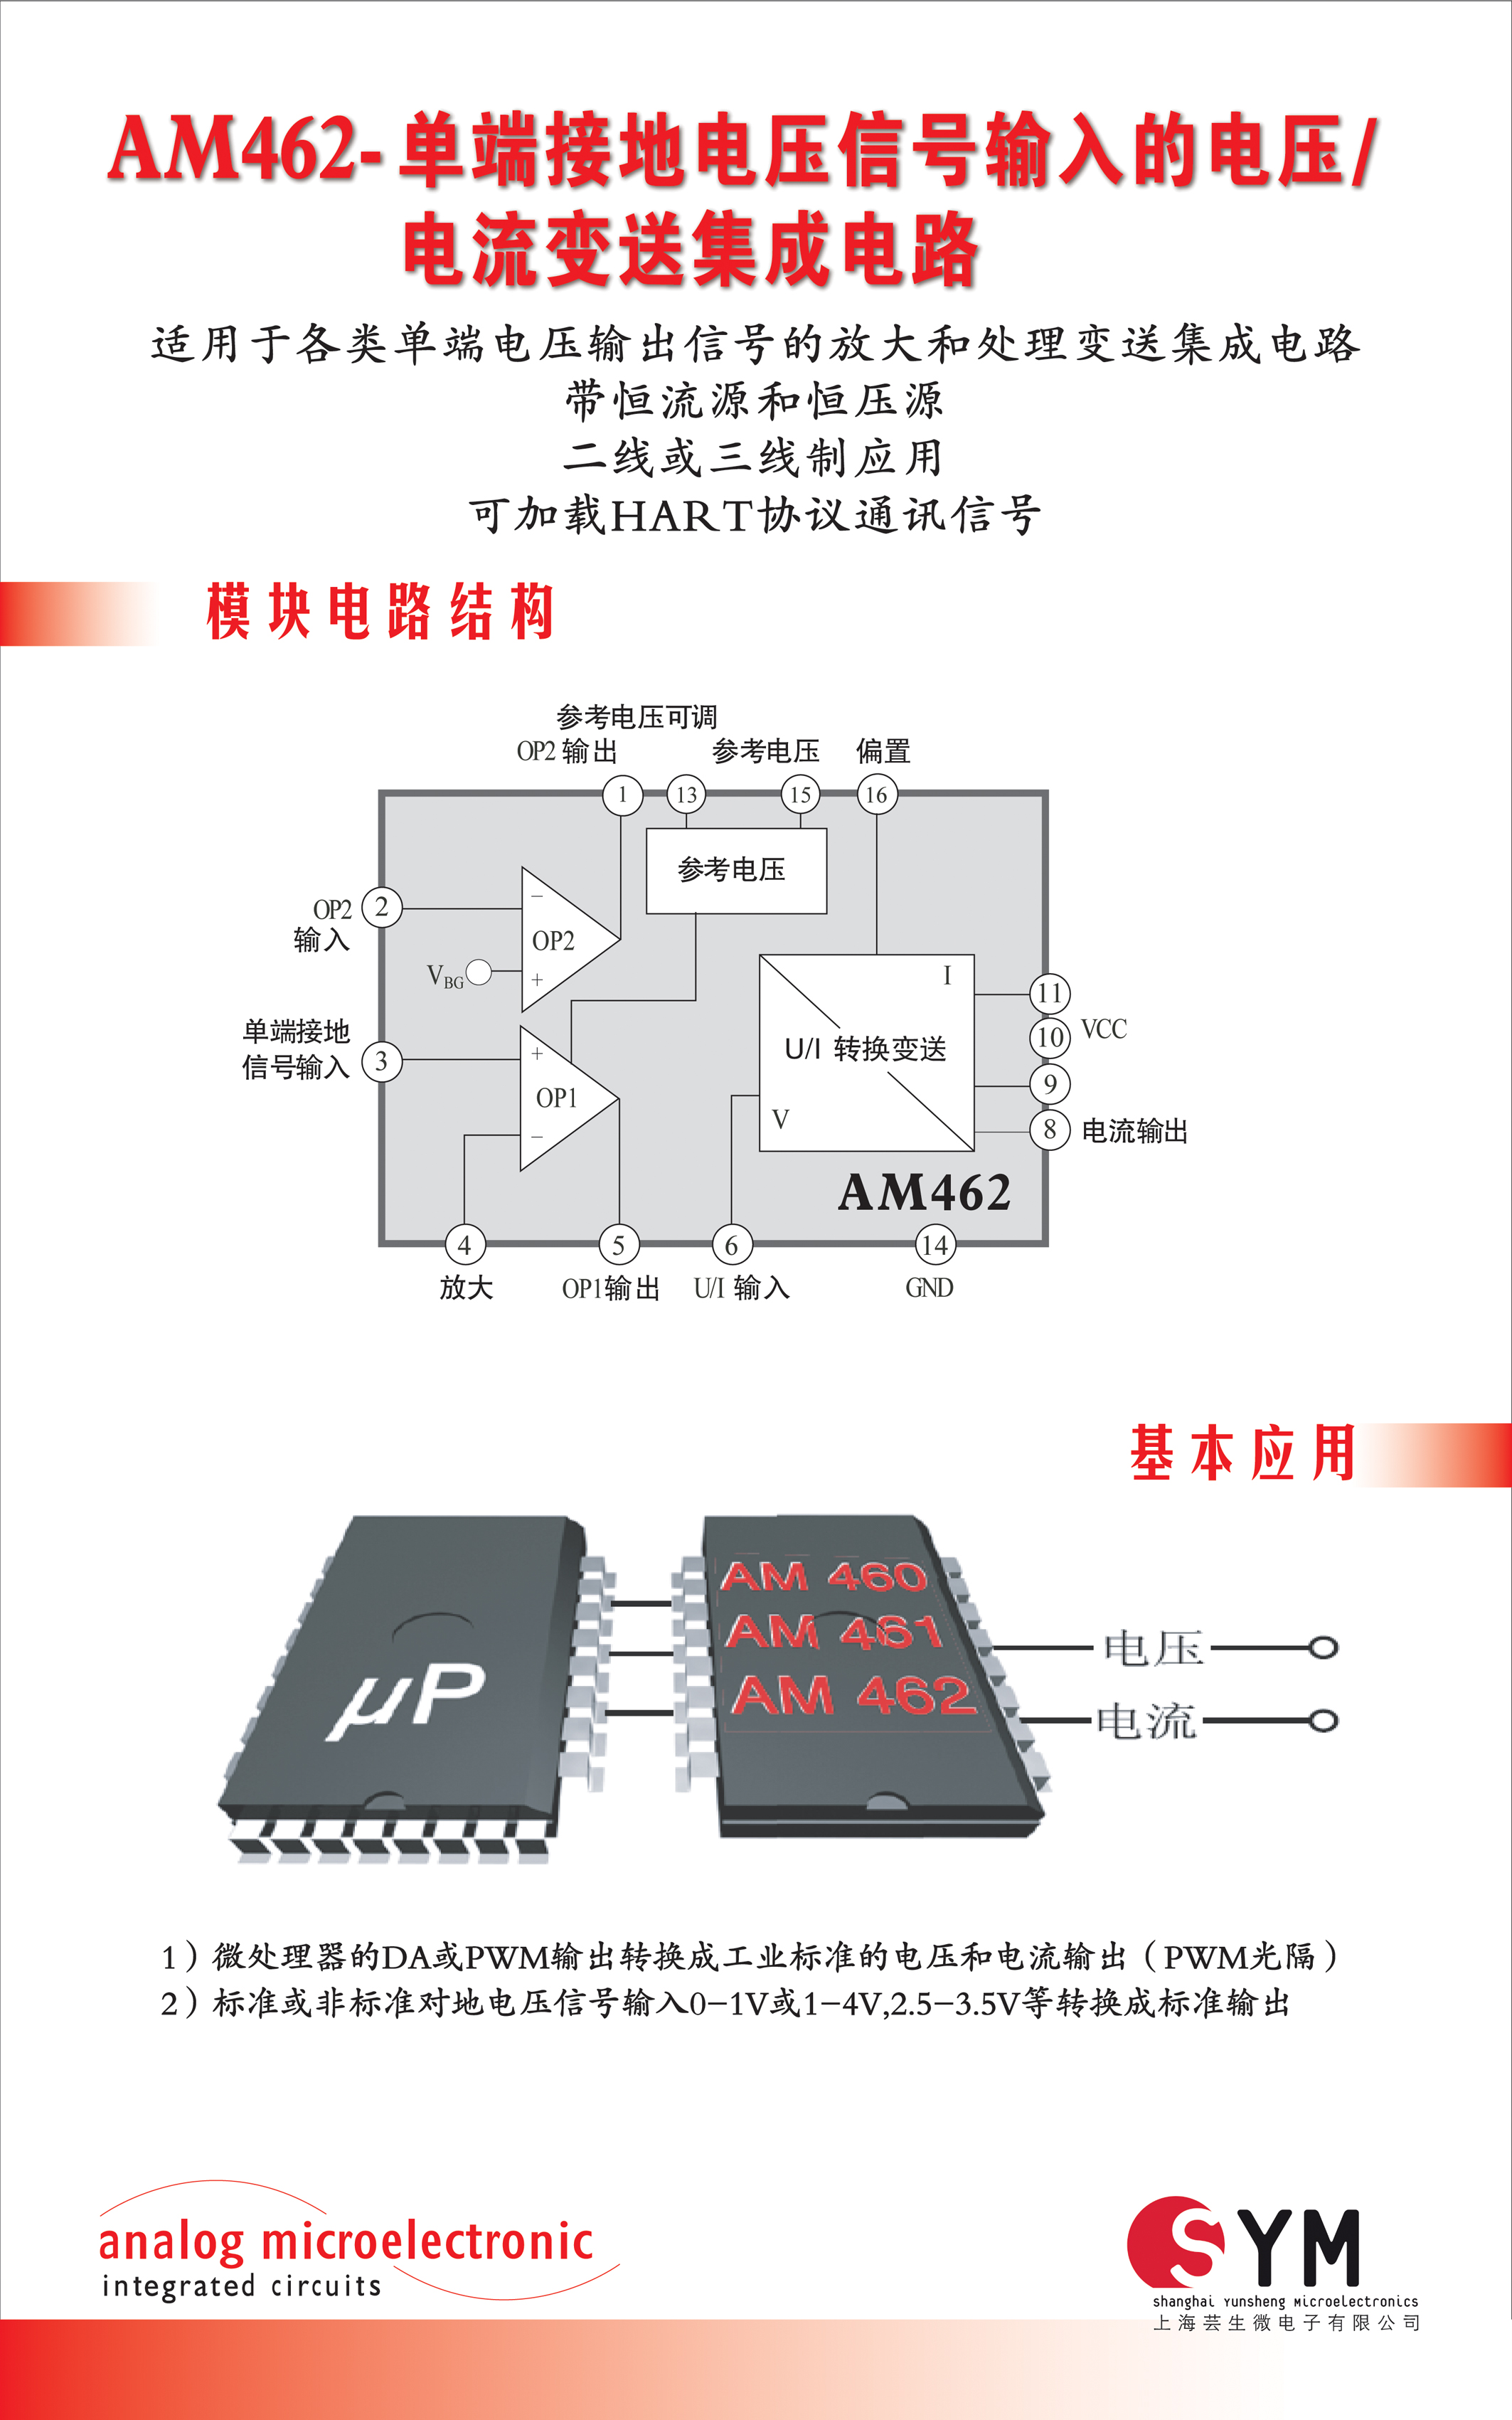 上海芸生微电子有限公司专用集成电路AM462